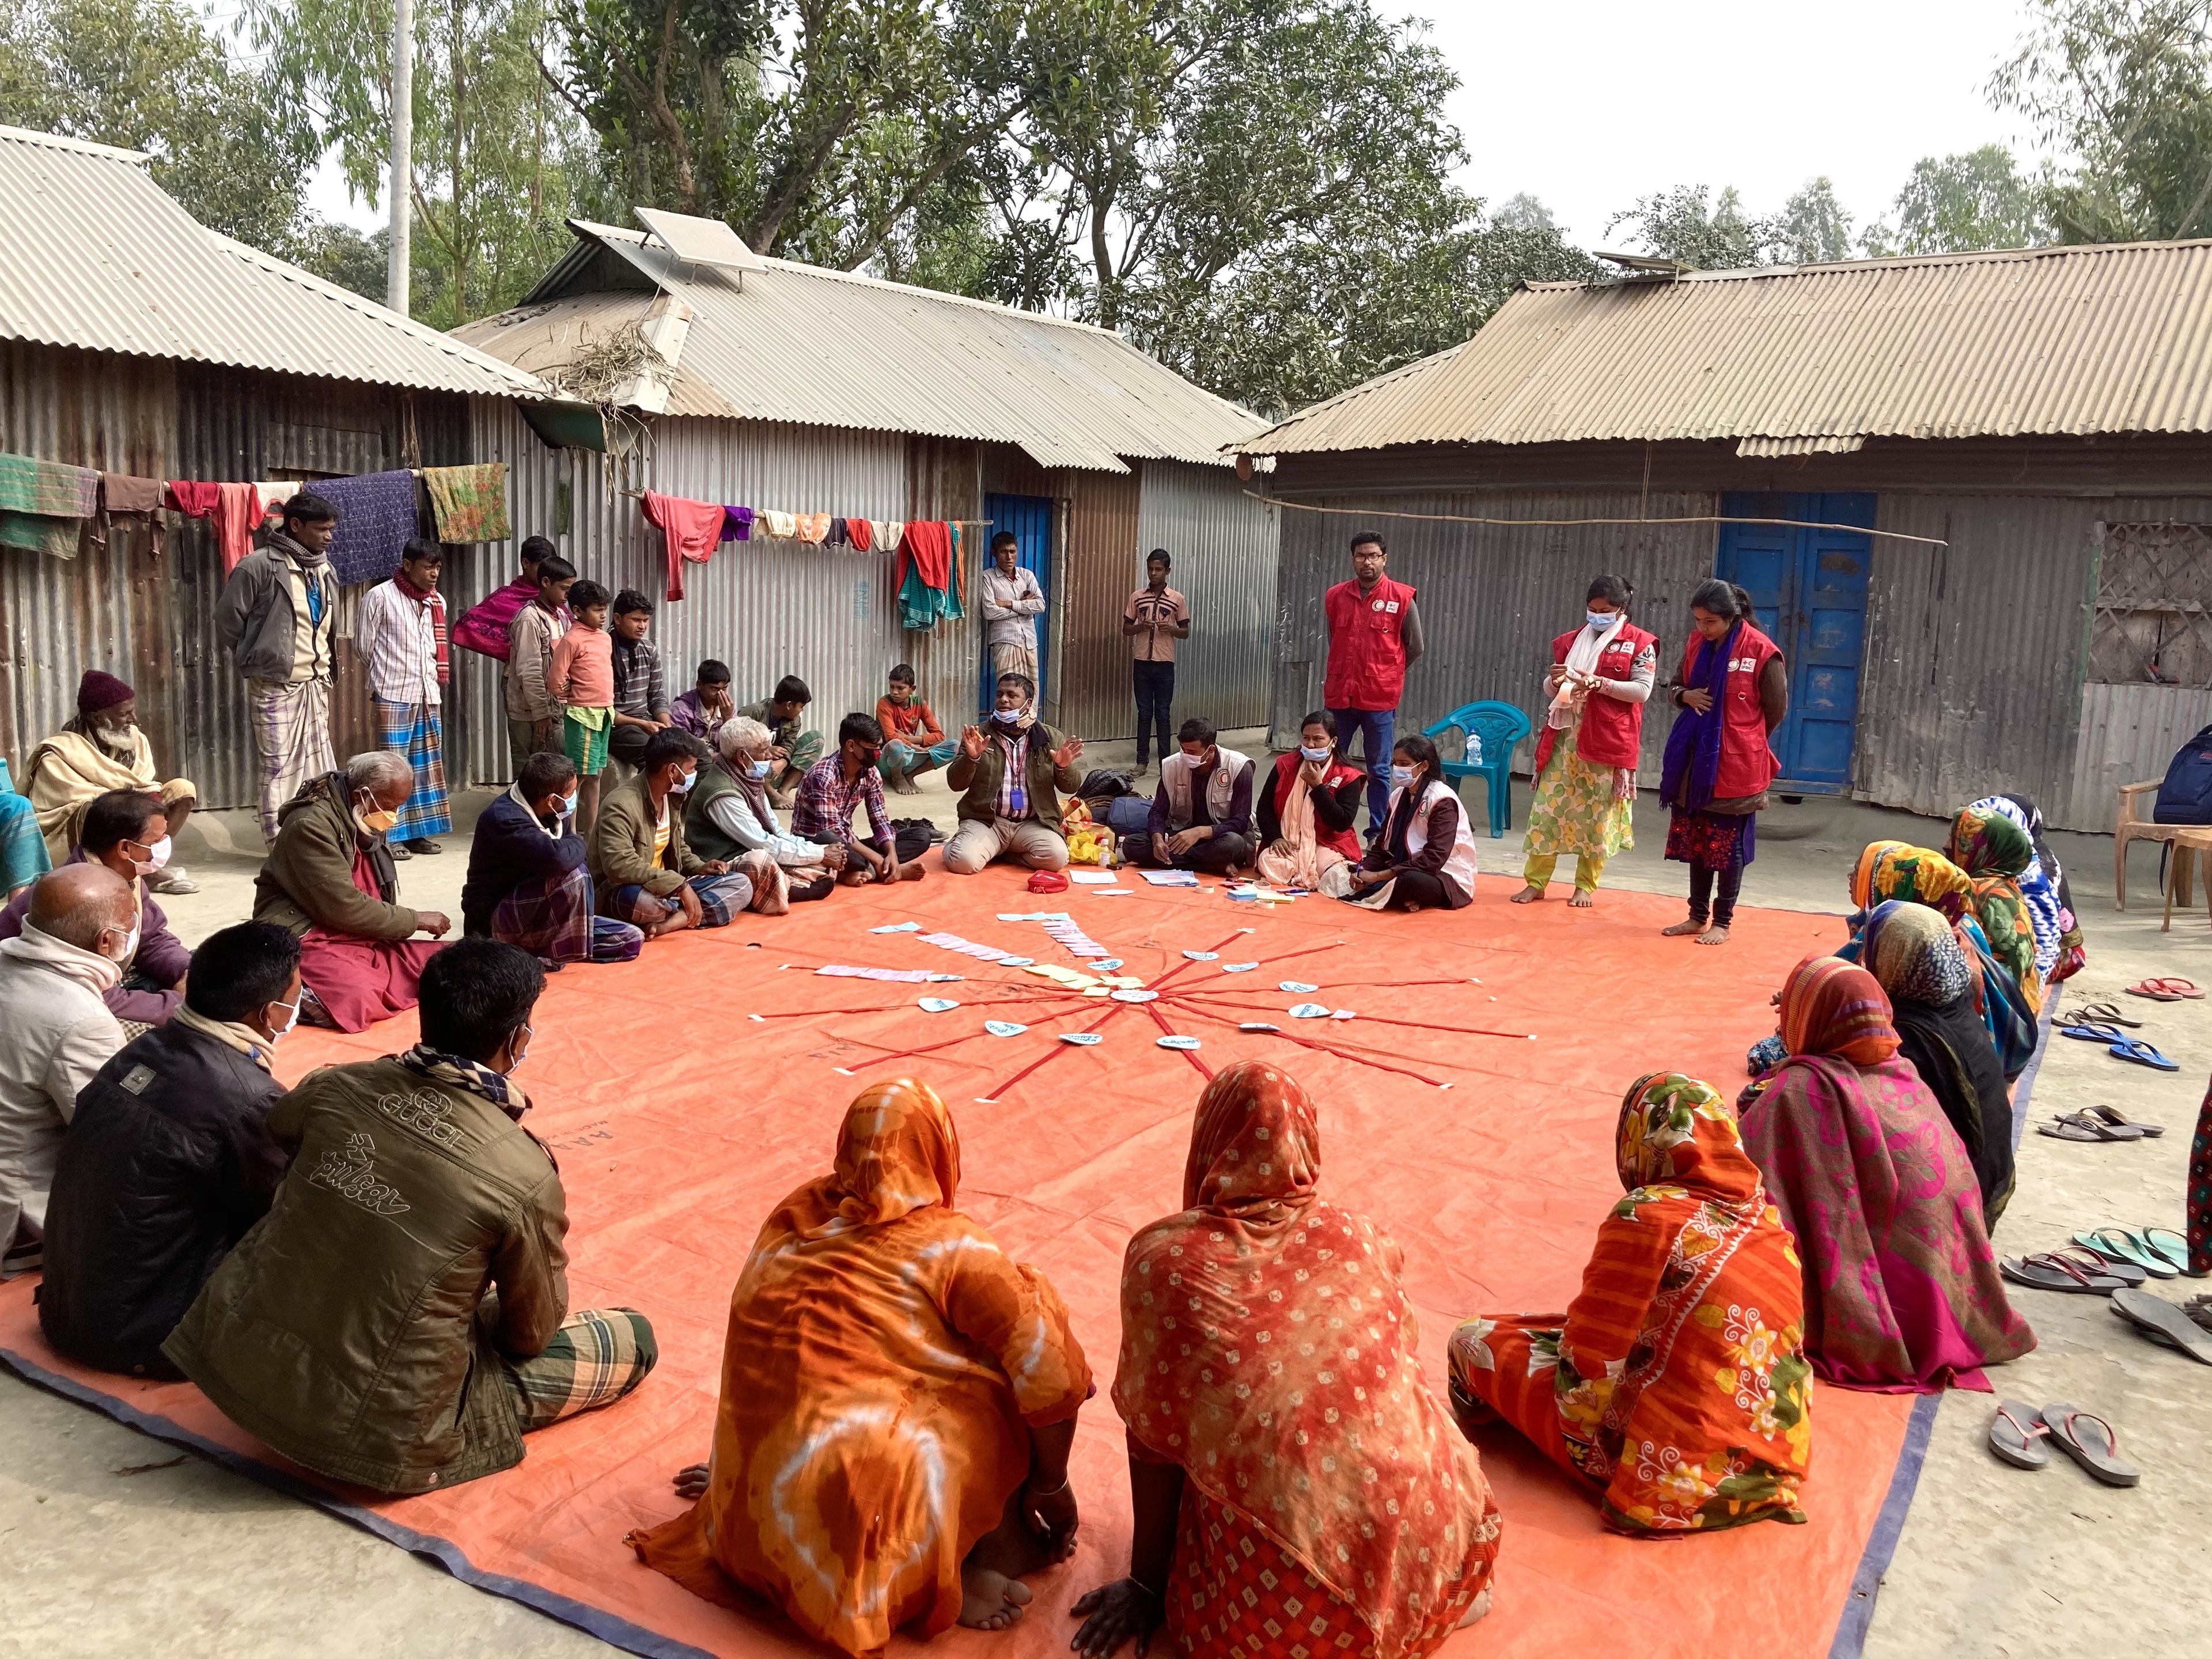 Frauen und Männer sitzen in einem Dorf in Bangladesch im Kreis am Boden. In der Mitte haben sie beschriftete Karten ausgelegt. Freiwillige des Bangladeschischen Roten Halbmonds sind auch zu sehen.